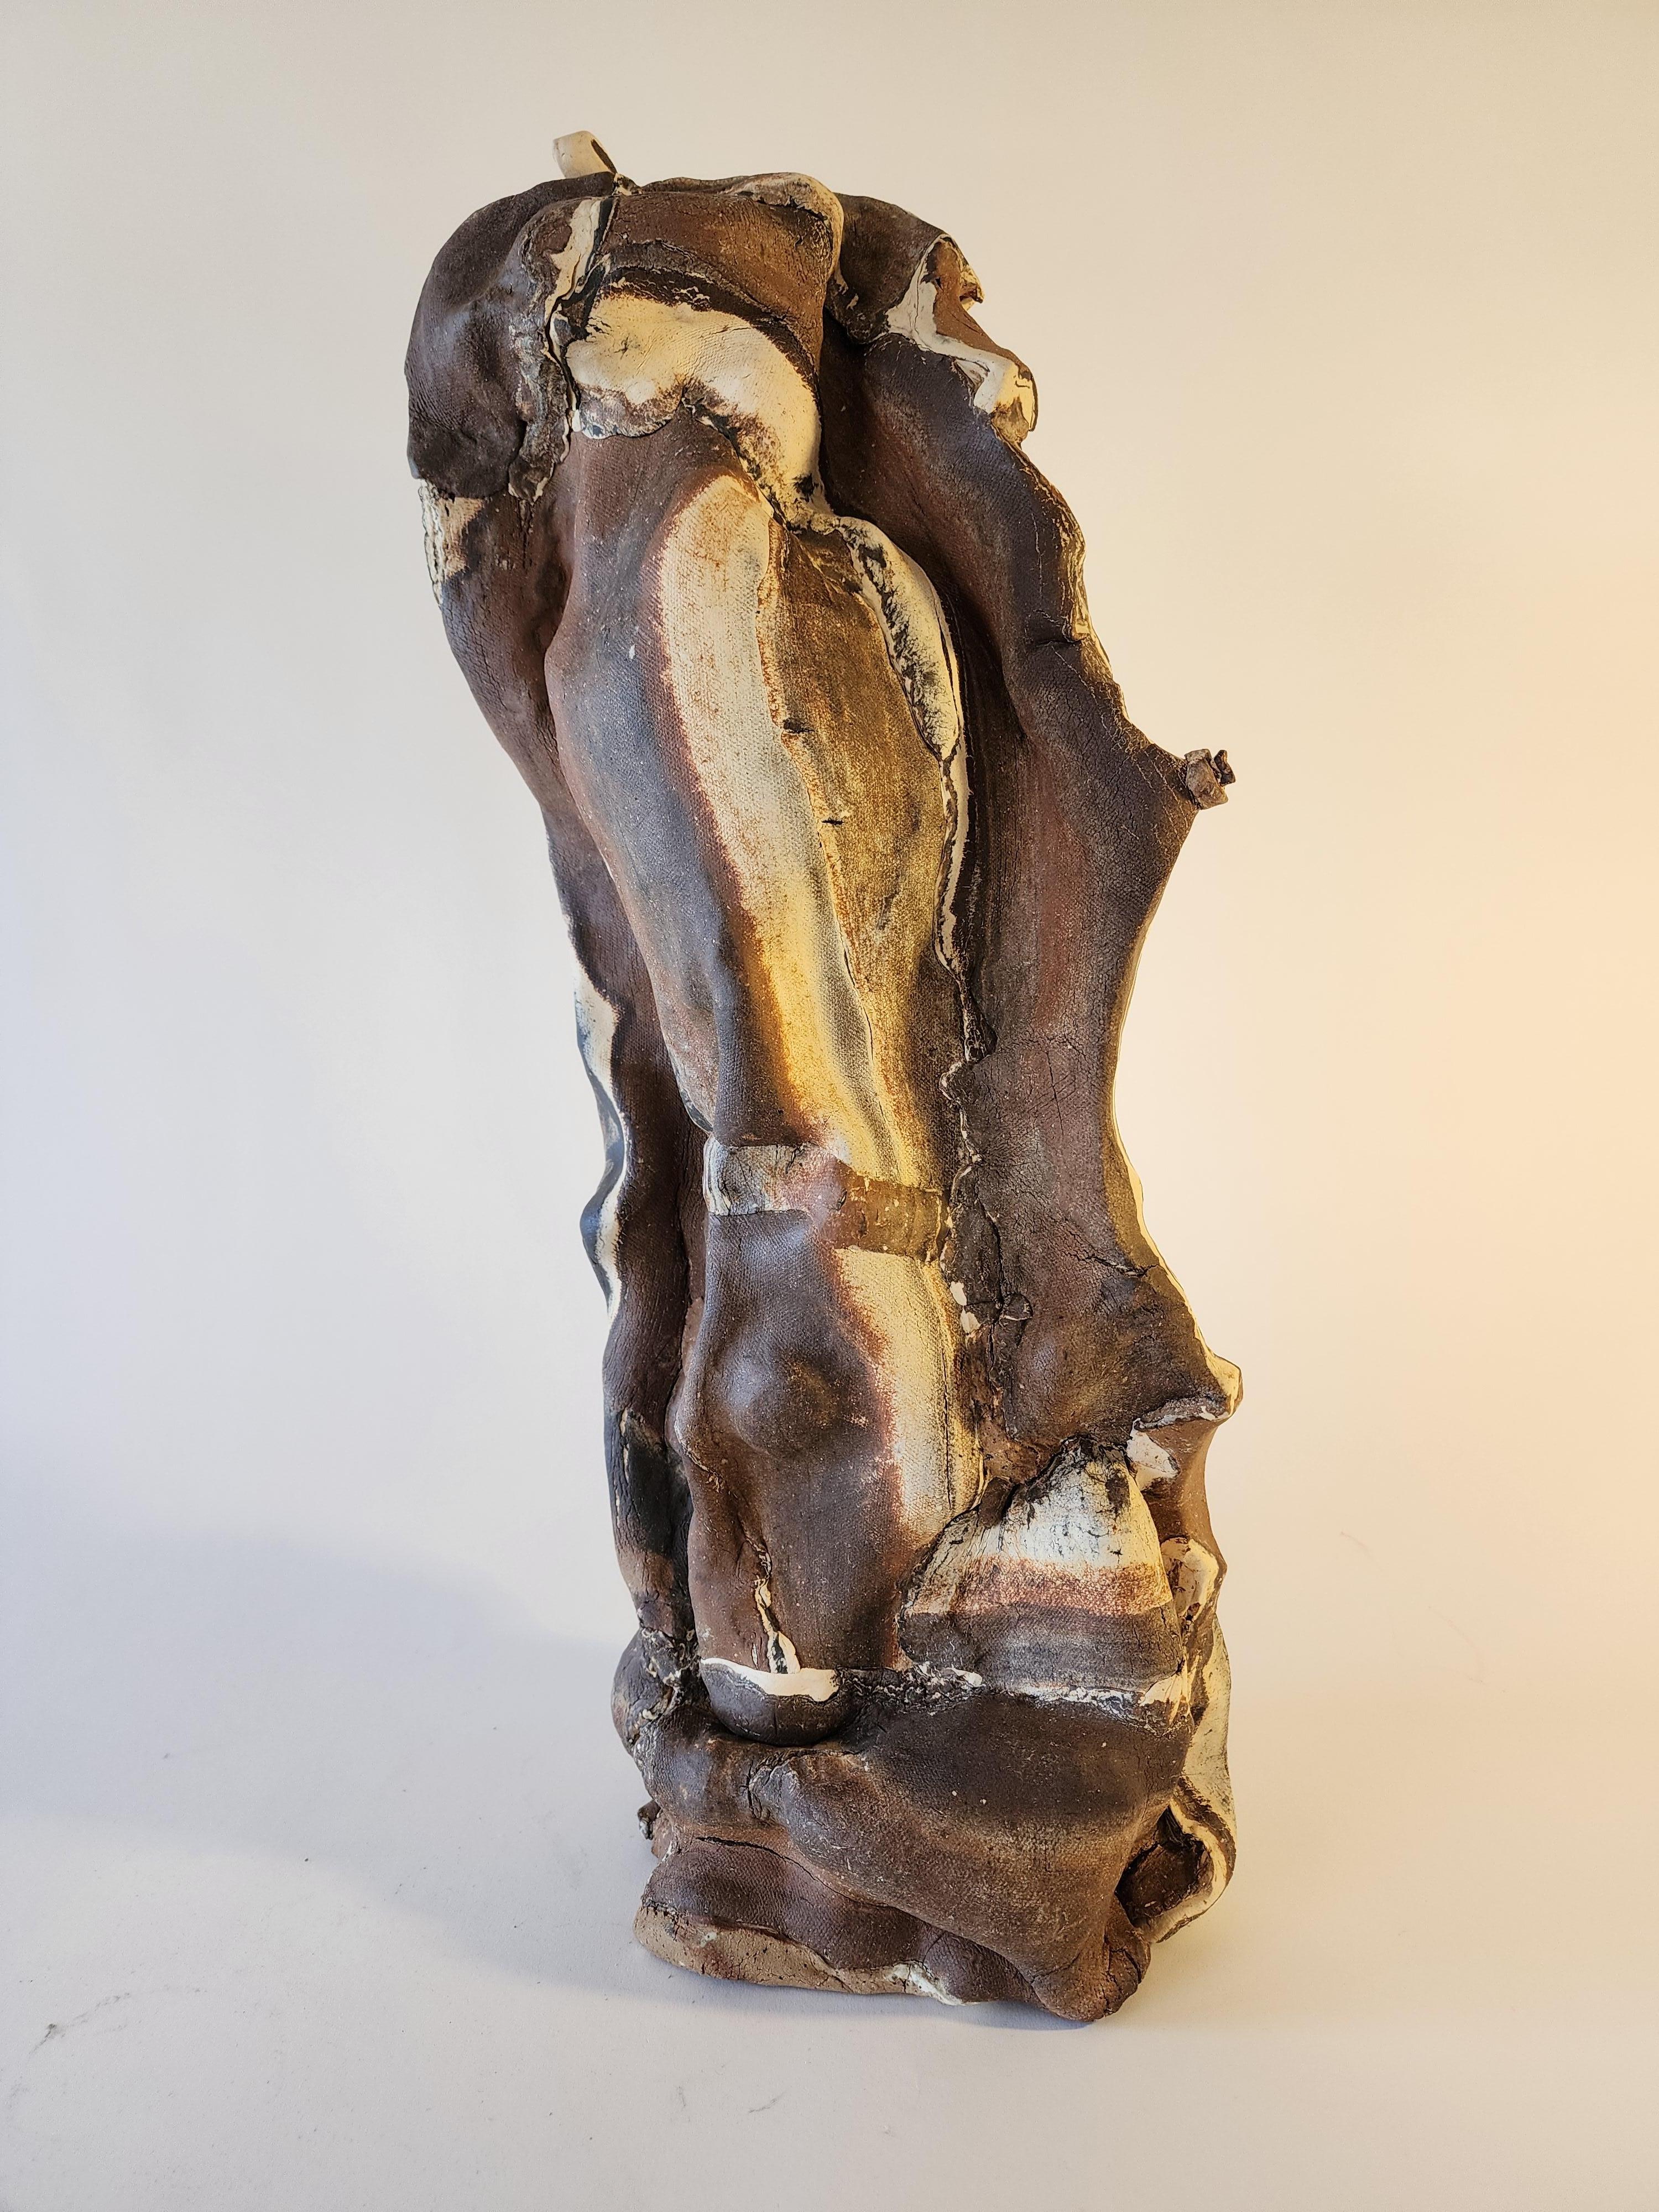 La sculpture en céramique de corps d'argile combinés, des processus uniques développés par Anna Bush Crews, s'appuie sur les qualités inhérentes au matériau, la façon dont il se lisse ou non, la façon dont il s'étire ou se brise dans les actions qui